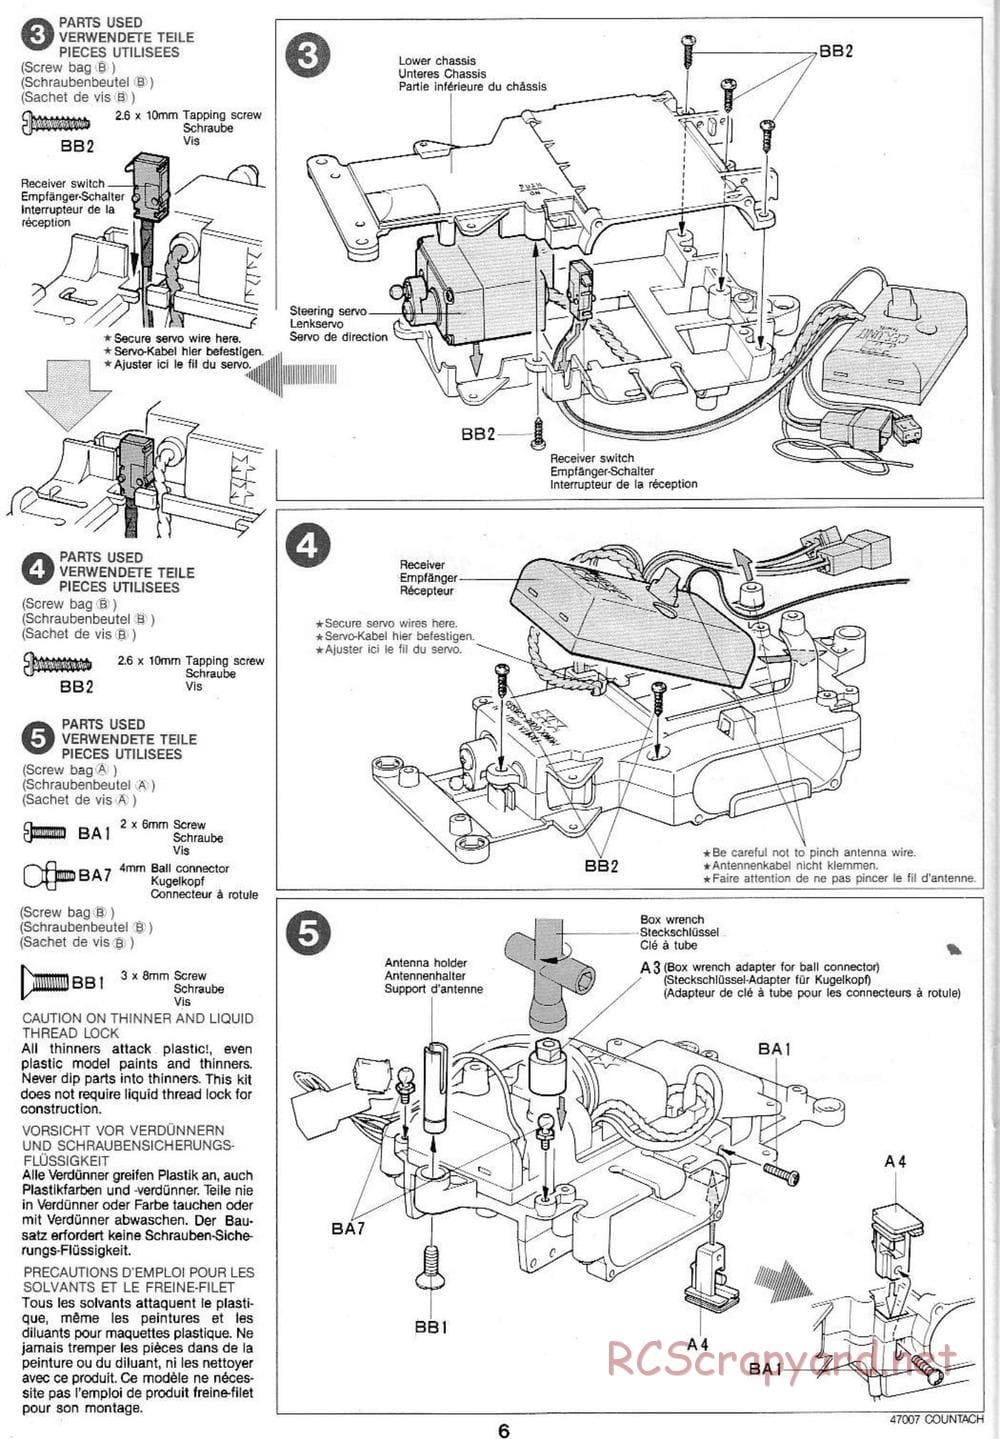 Tamiya - Tamtech - Lamborghini Countach 5000 Chassis - Manual - Page 6